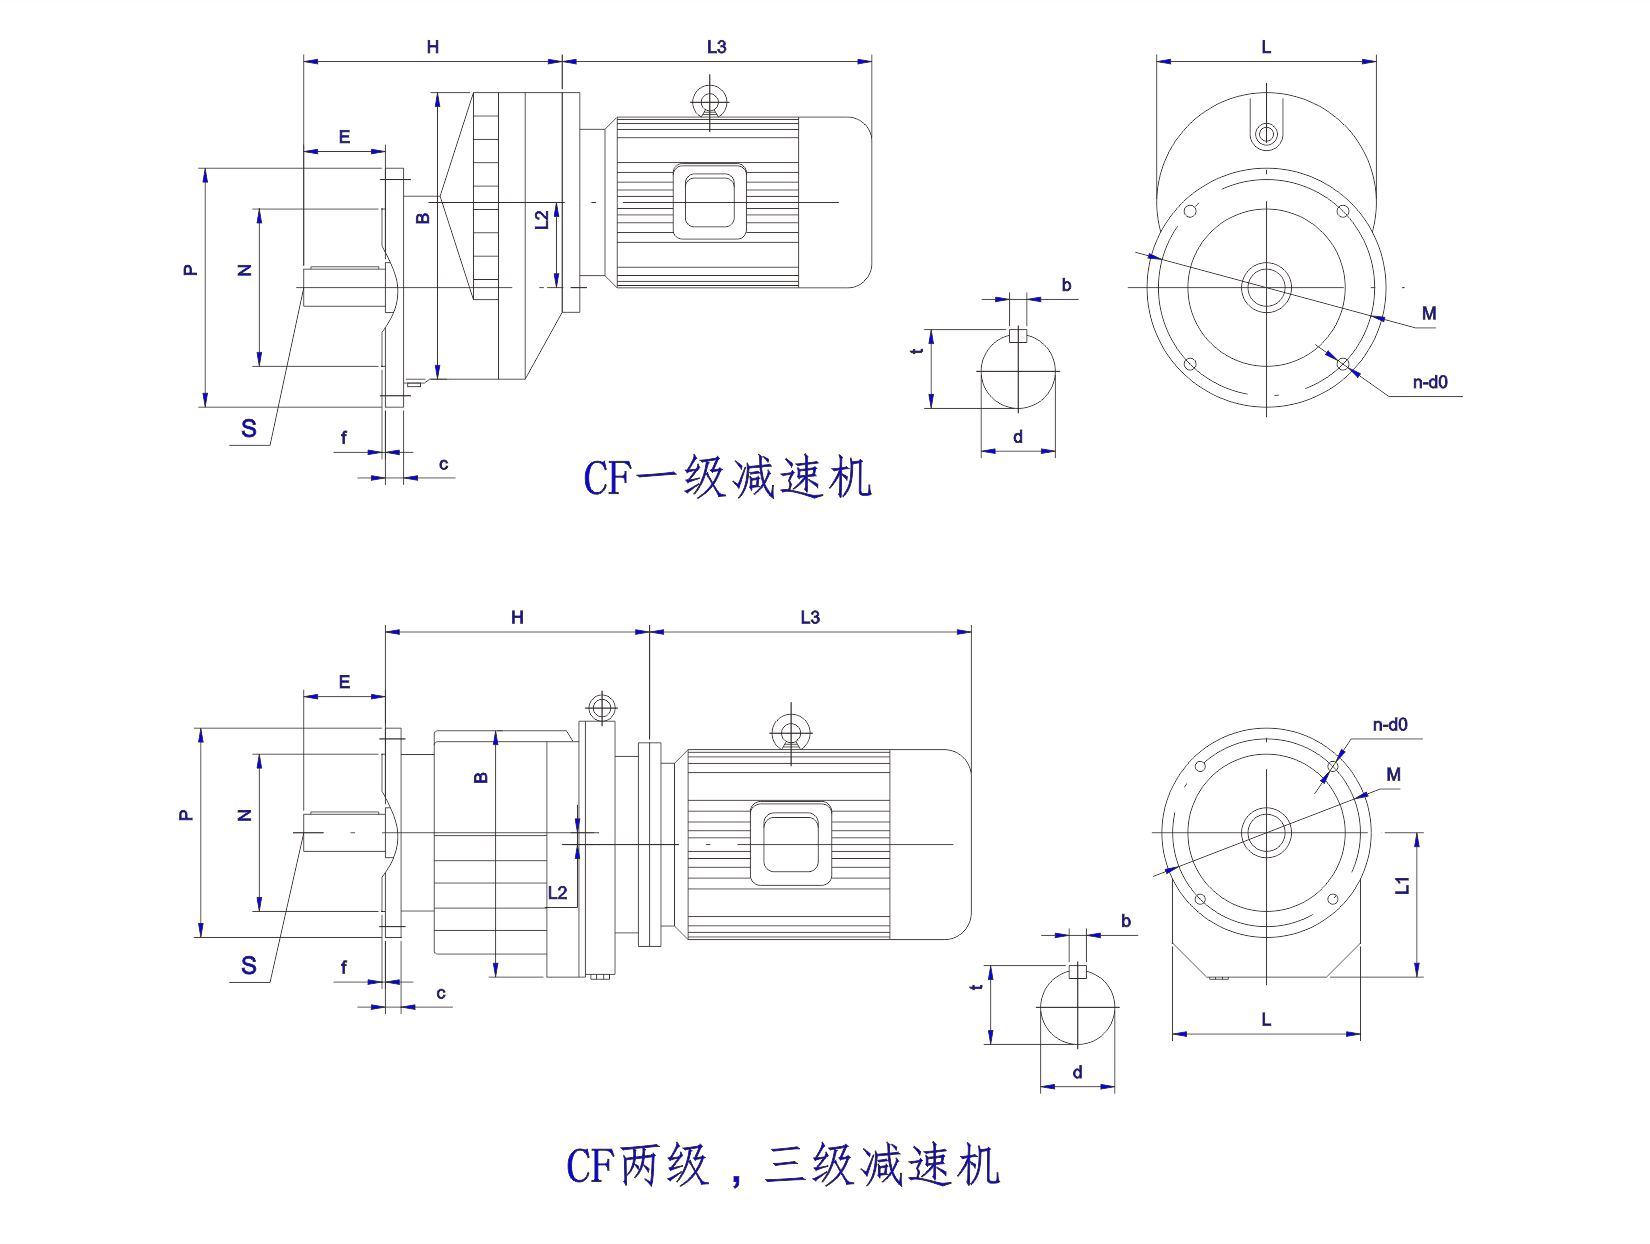   CF 系列同轴齿轮减速机设计图